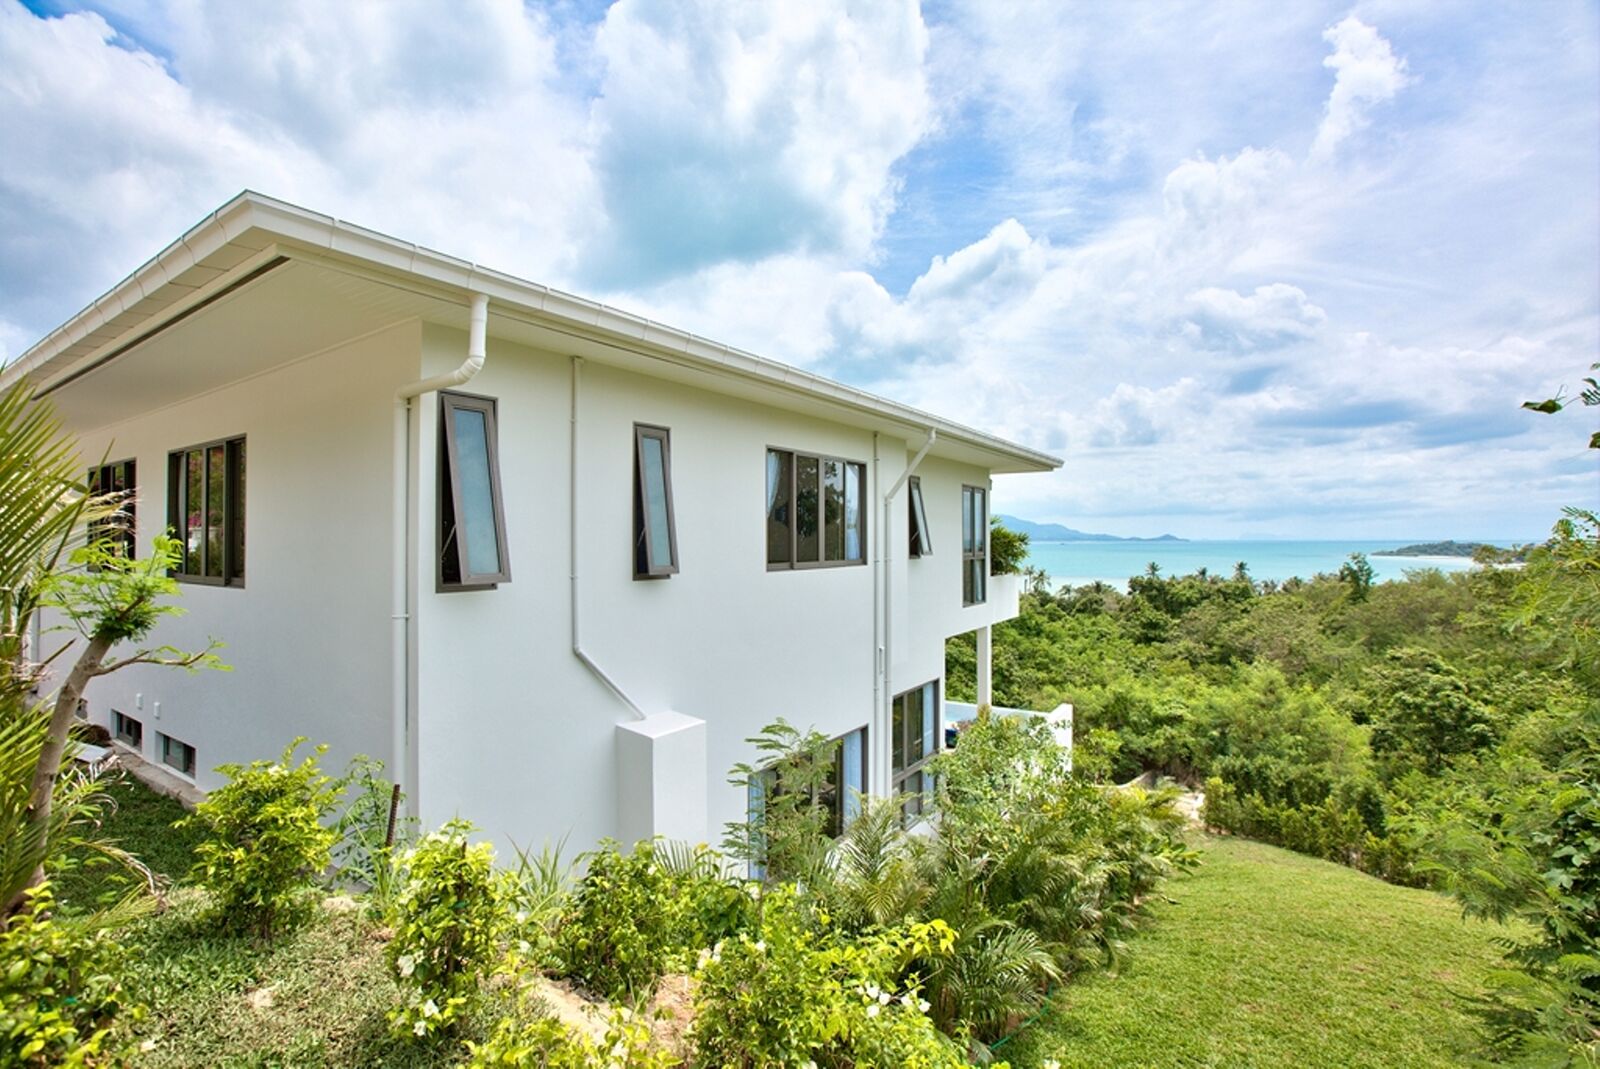 4 Bedroom Sea View Villa with Private Pool at Tongson Bay Koh Samui